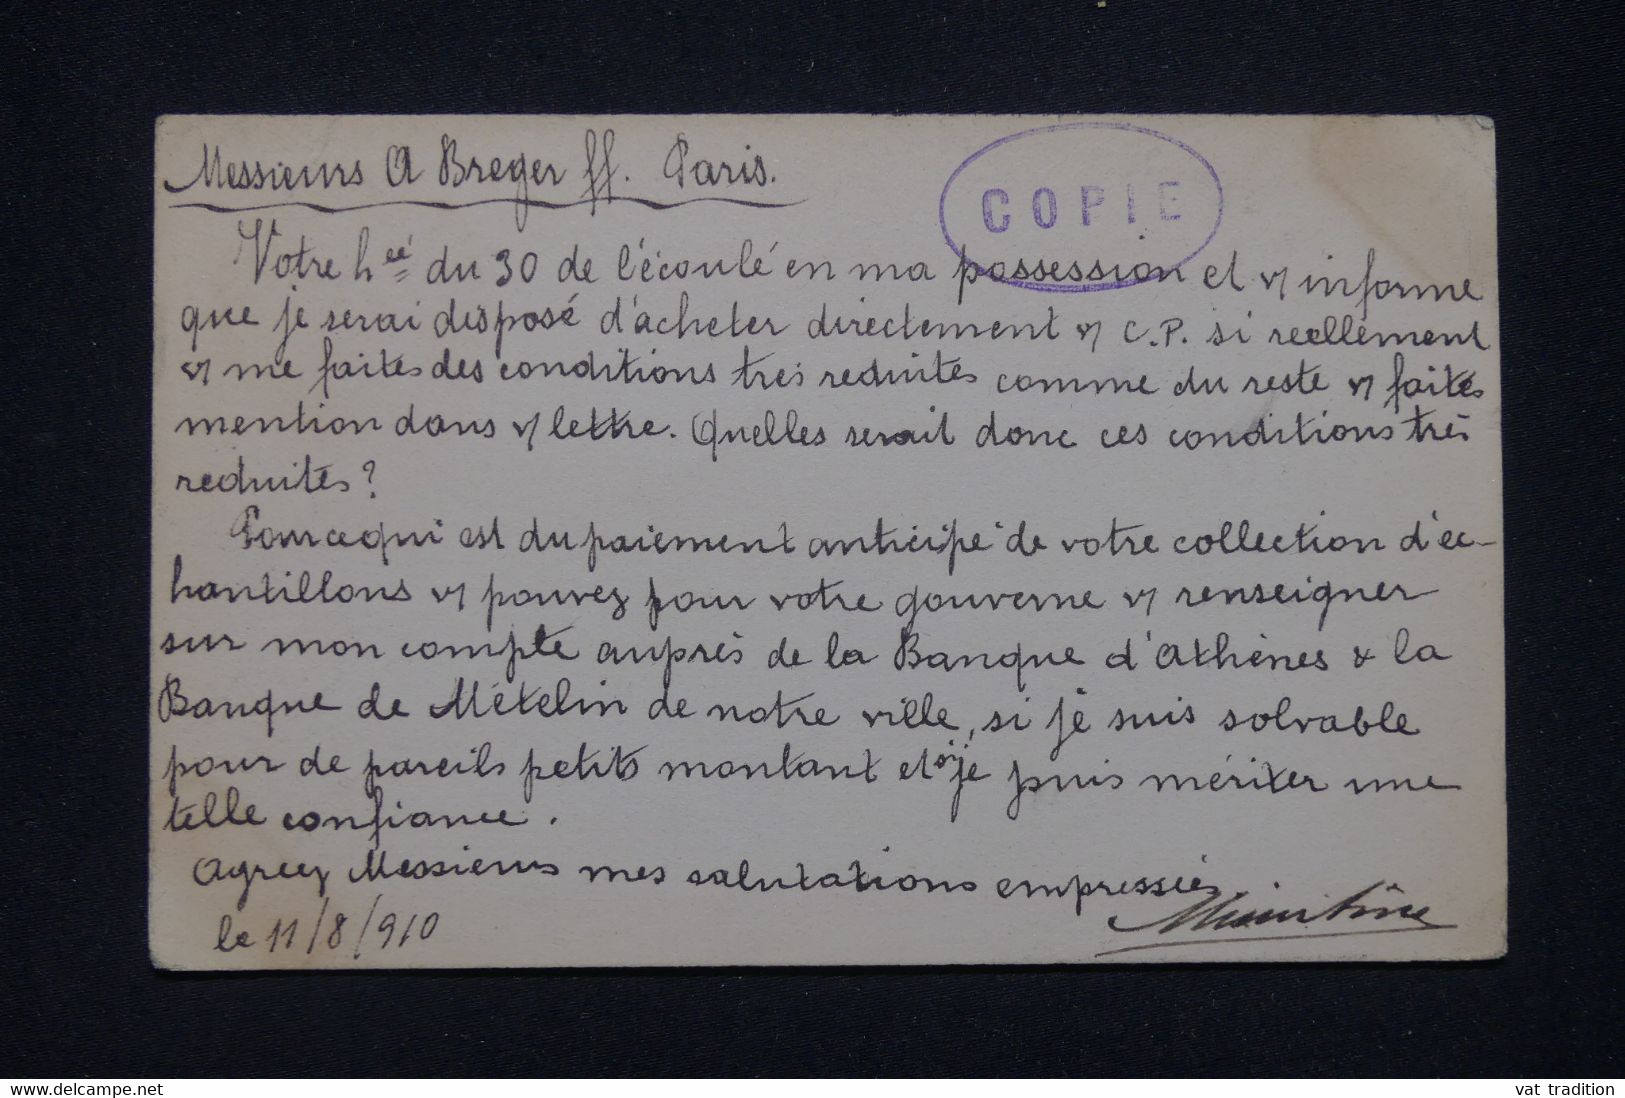 GRECE - Entier Postal De Athènes Pour Paris En 1910 - L 139056 - Enteros Postales